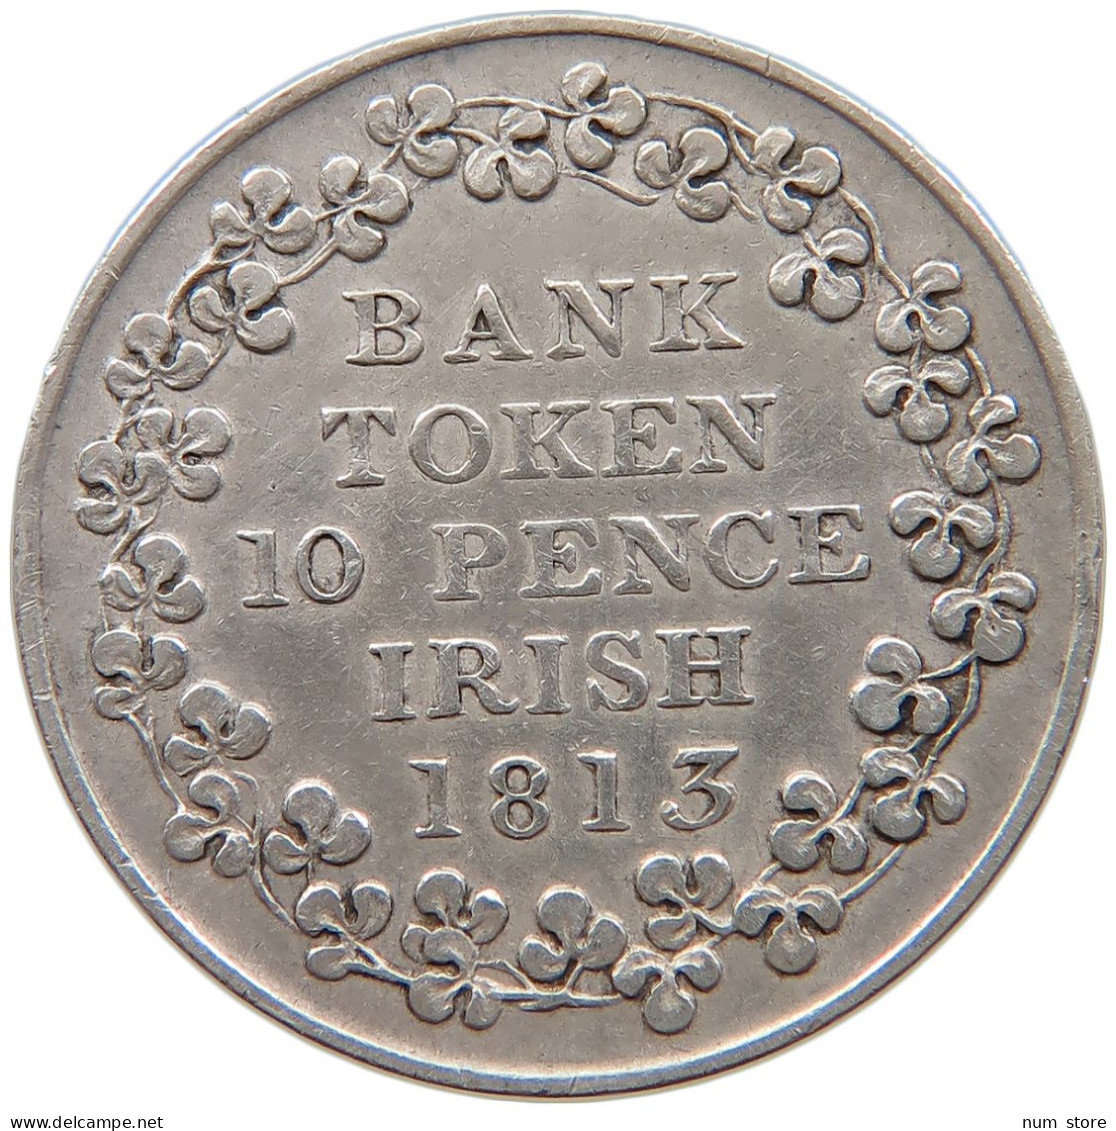 IRELAND 10 PENCE 1813 GEORGE III. 1760-1820 BANK TOKEN #t022 0623 - Irlande